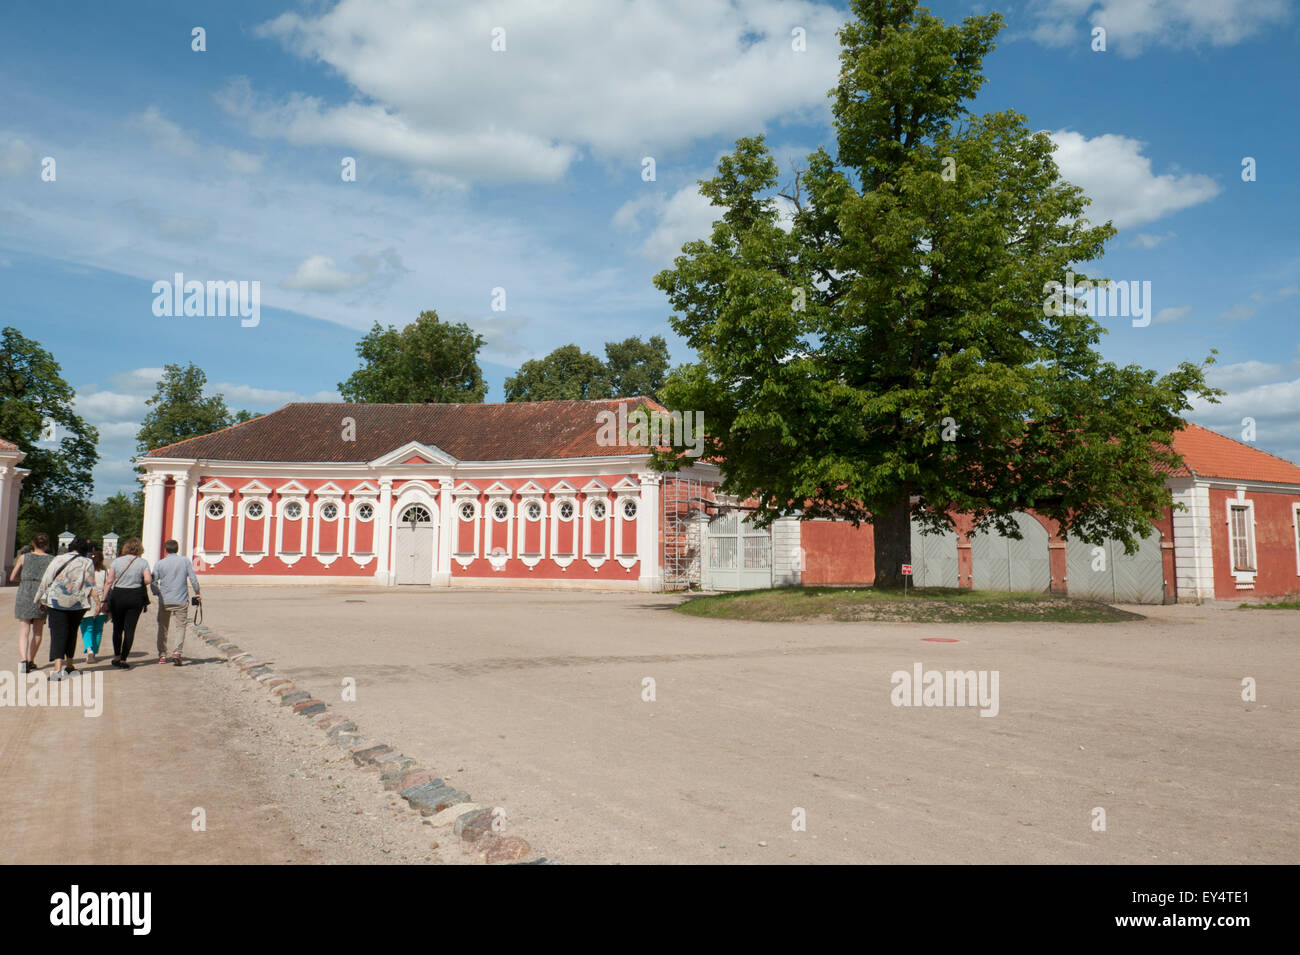 Die Ställe im südlichen Lettland Rundale Palace. Palast aus der 18. Jahrhundert war eine Sommerresidenz für den Herzog von Kurland. Stockfoto